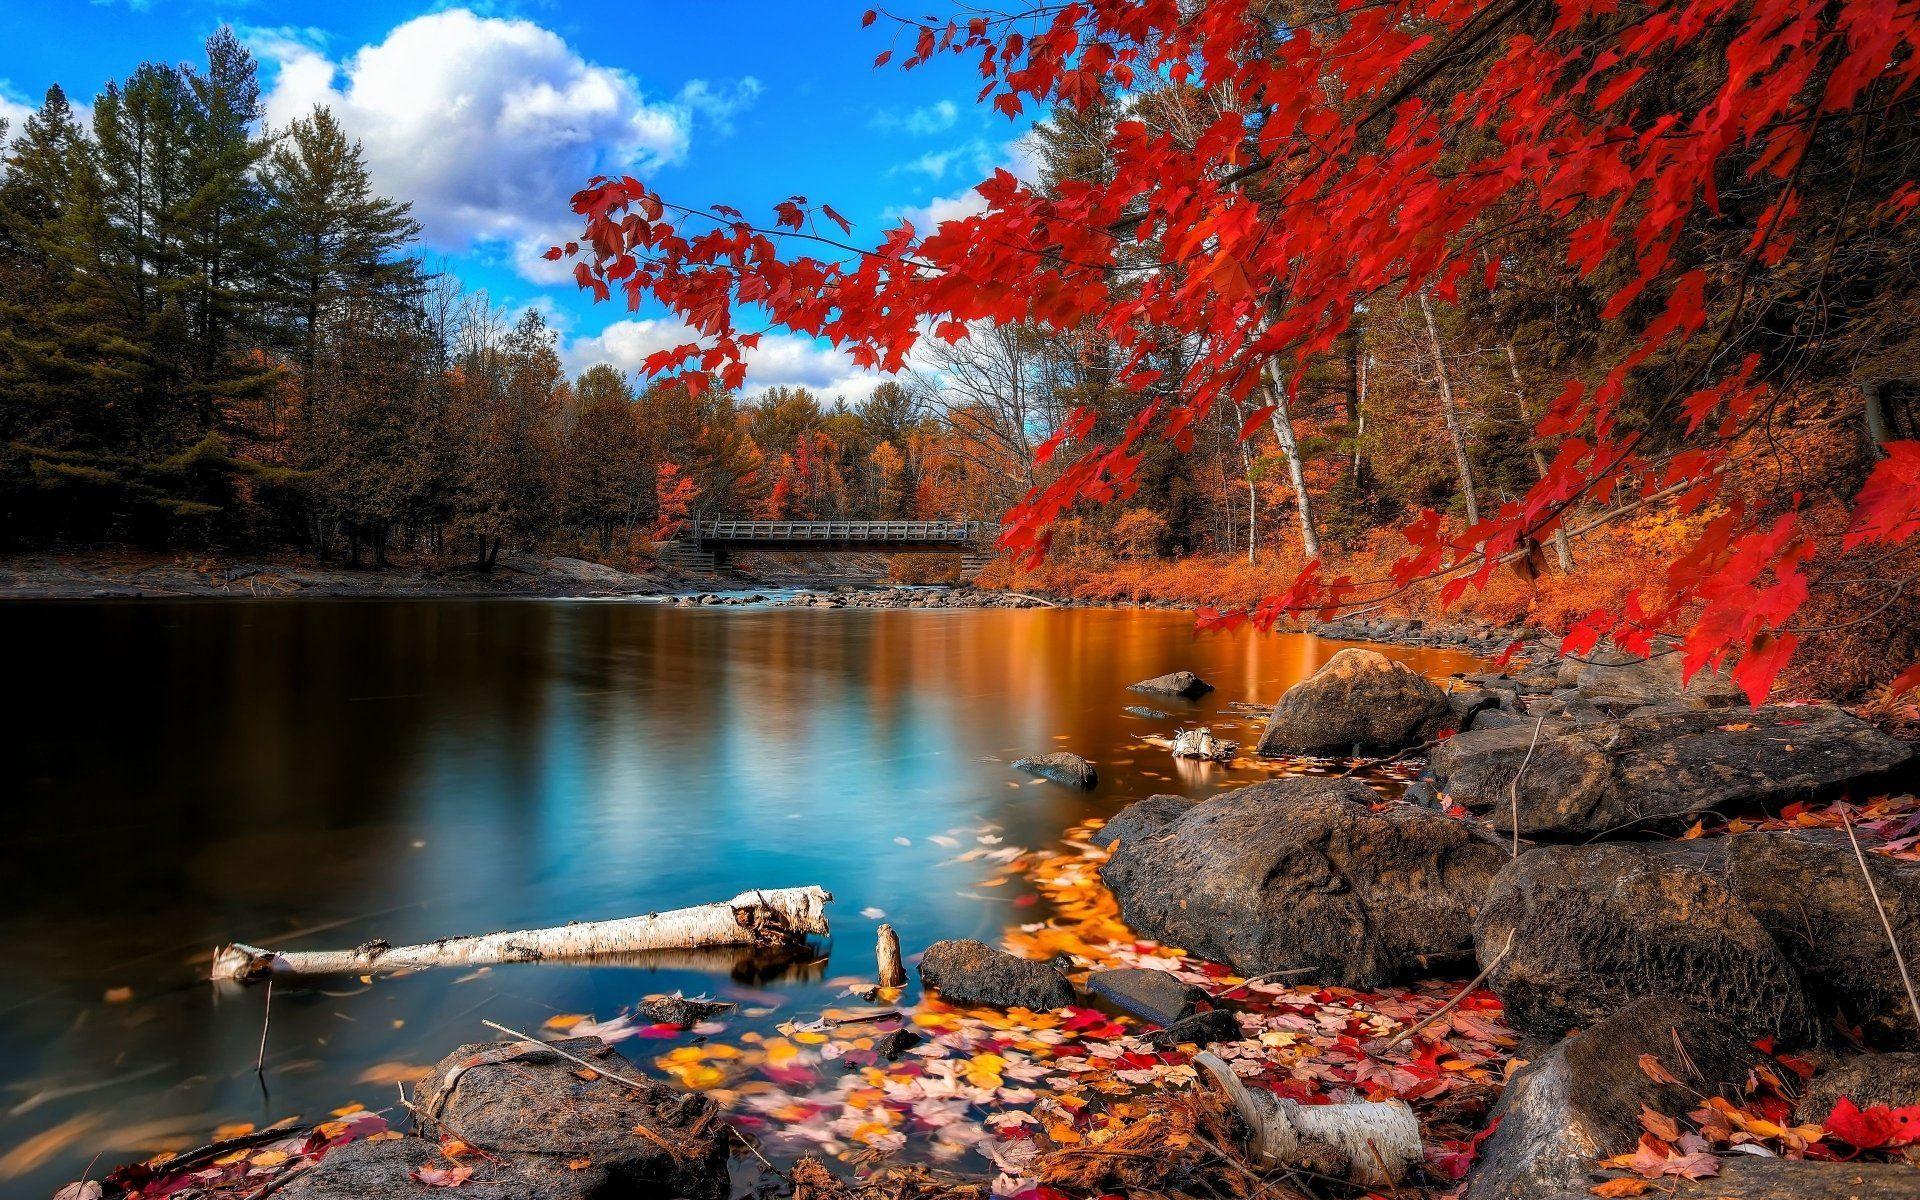 Hình nền mùa thu 4K - Top các hình nền mùa thu 4K miễn phí sẽ giúp bạn tìm thấy những bức hình nền mùa thu đẹp nhất để làm mới giao diện máy tính của bạn. Hình ảnh rực rỡ mà mùa thu đã mang lại sẽ khiến bạn lơi cuốn ngay từ cái nhìn đầu tiên.